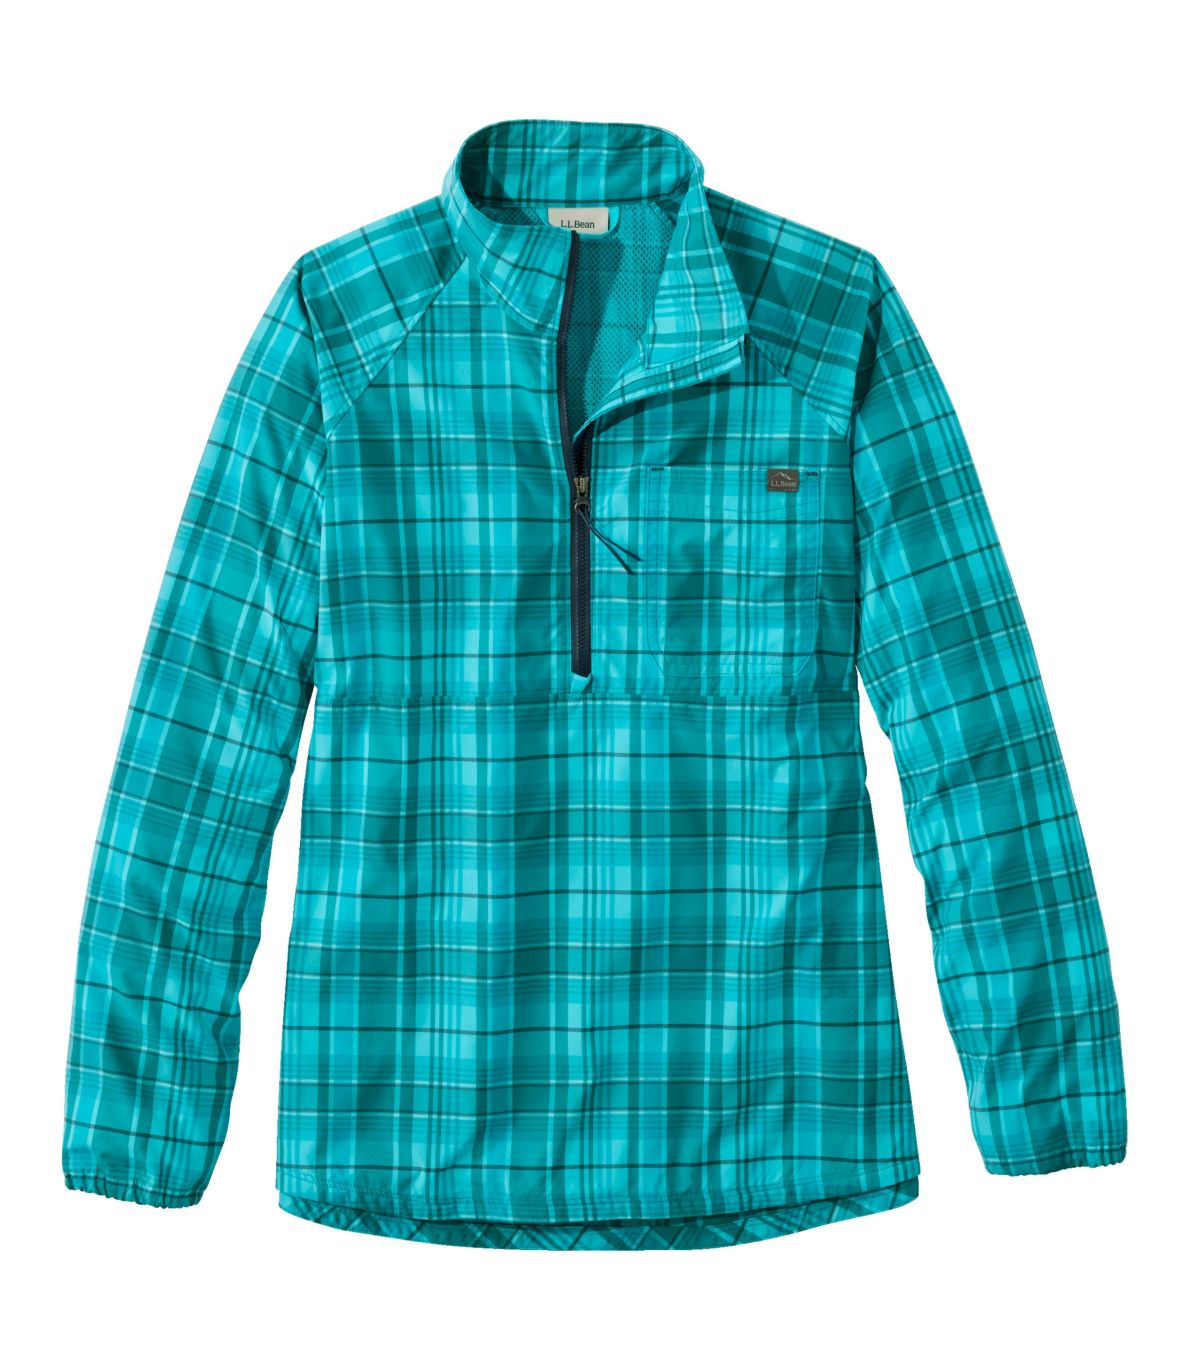 Women's Everyday SunSmart® Woven Shirt, Quarter-Zip Pullover Plaid